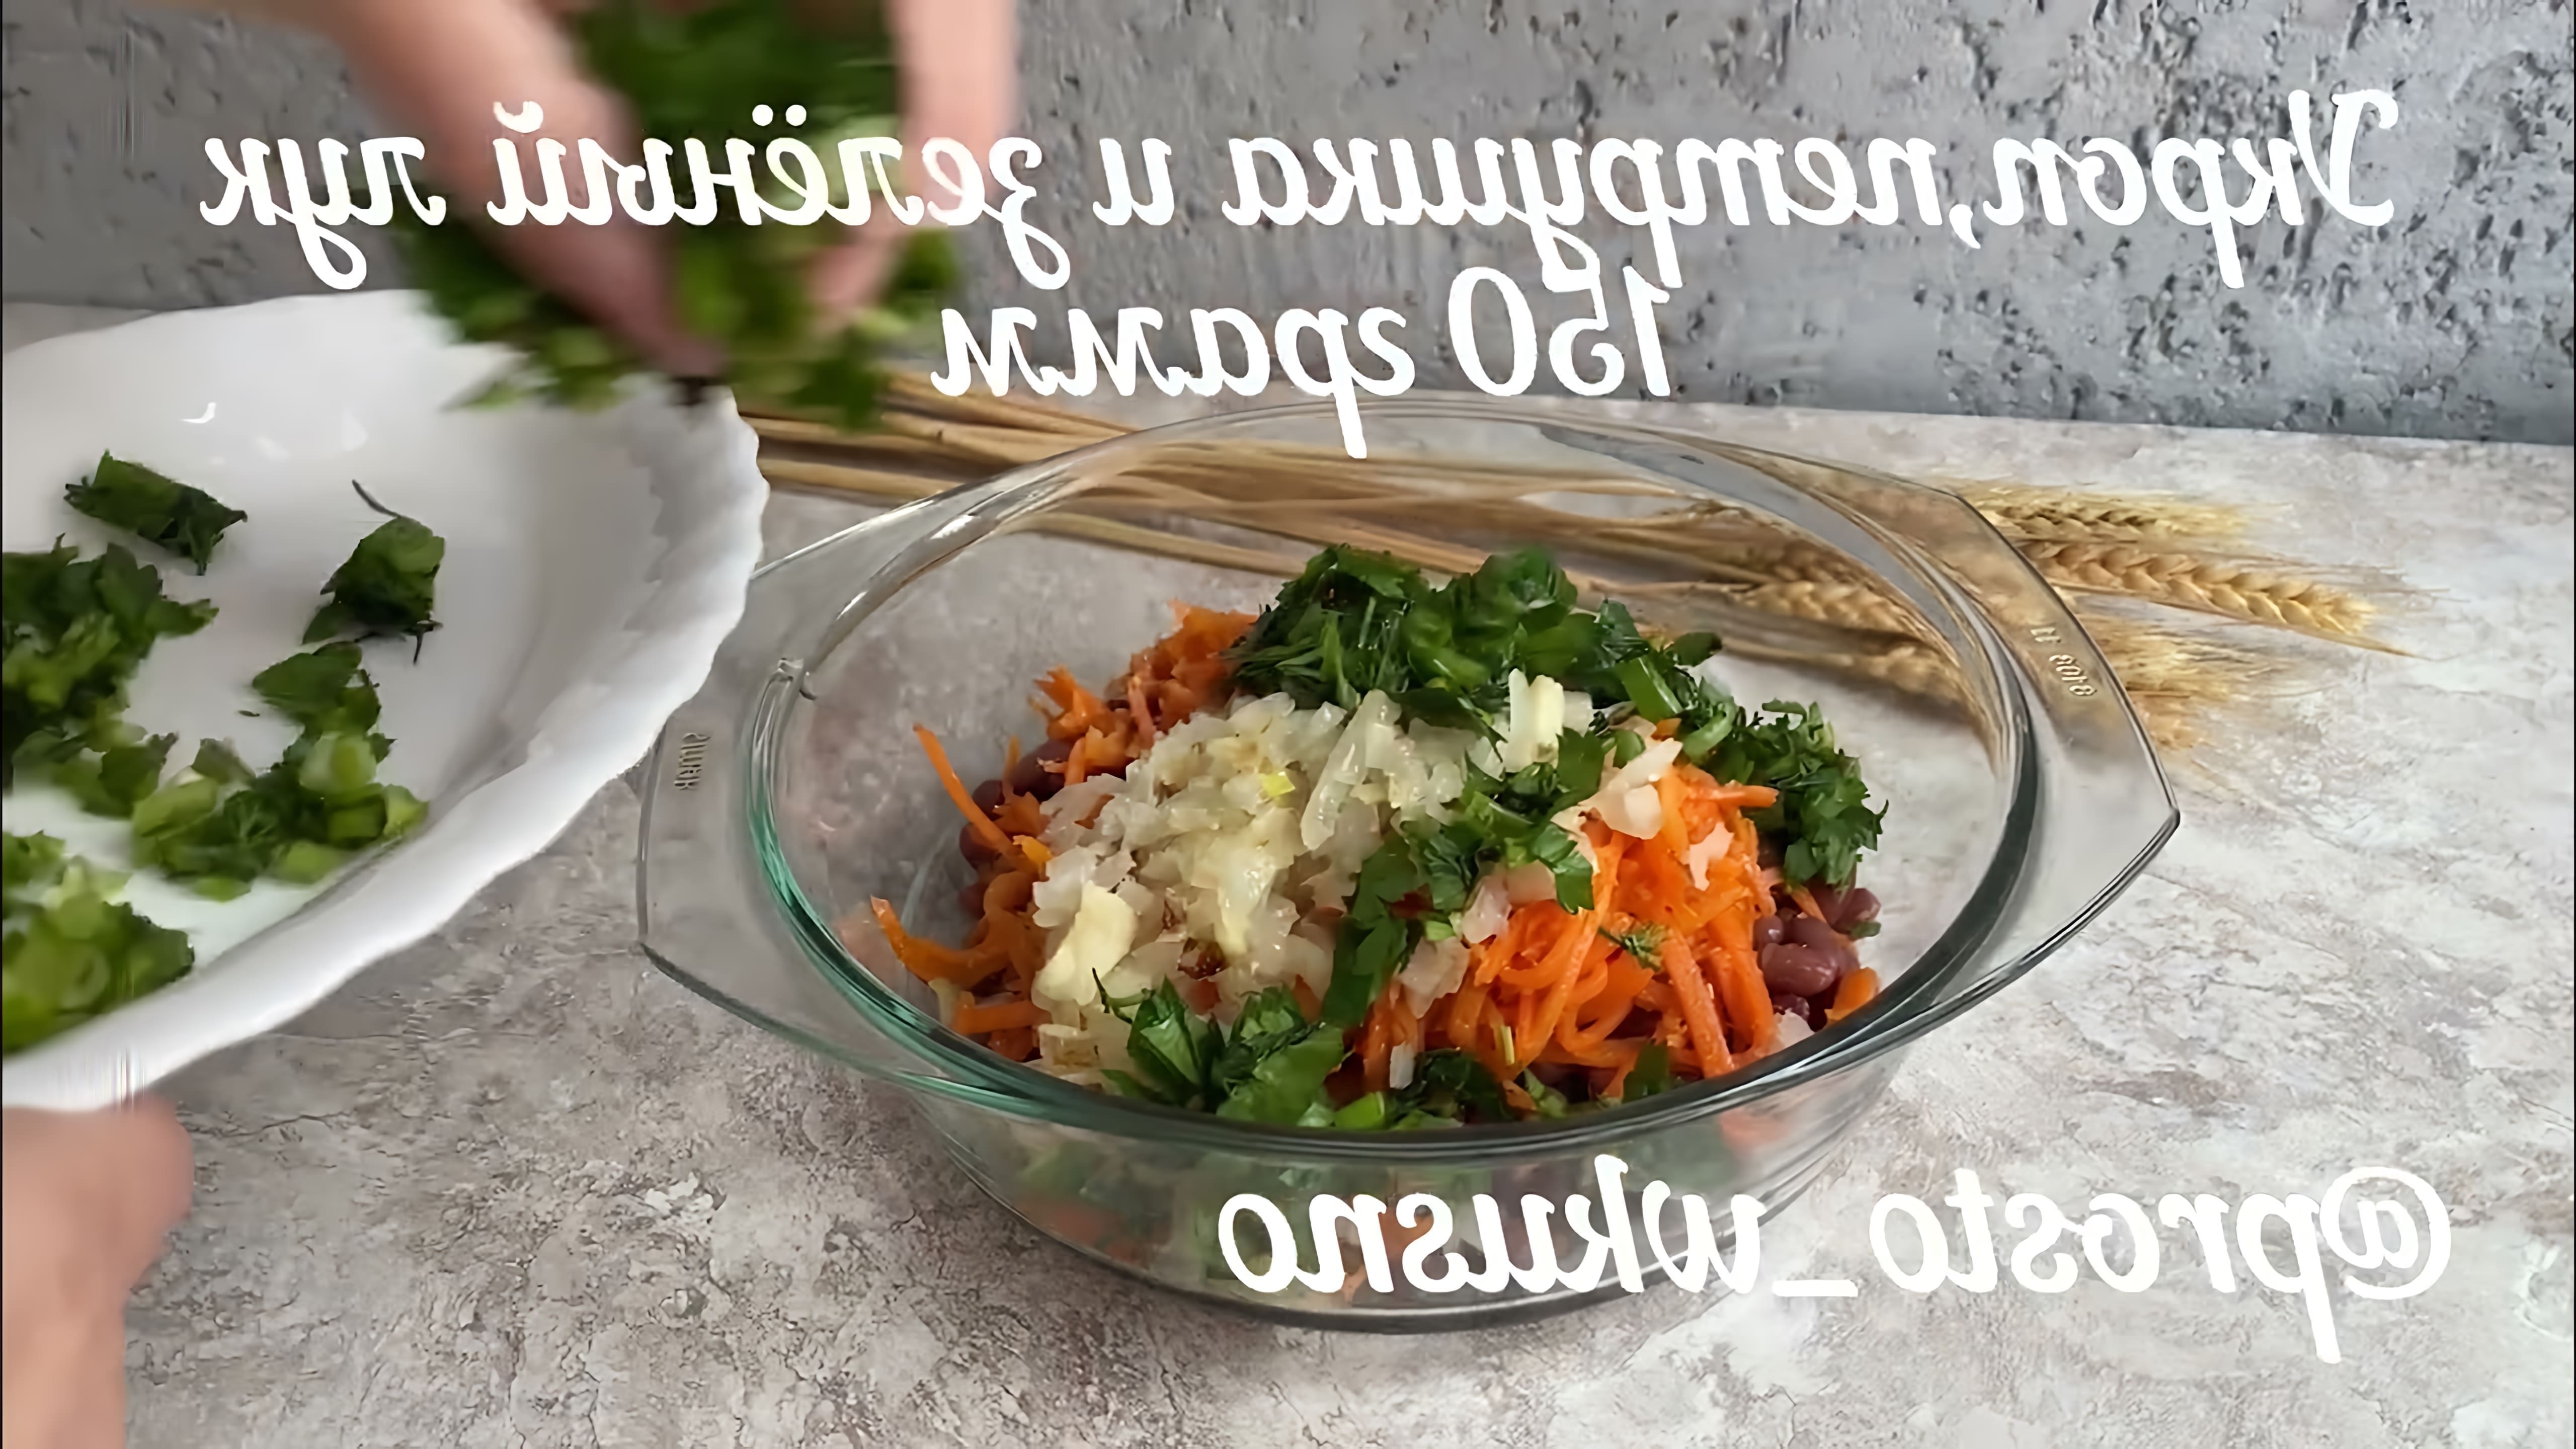 Салат из фасоли с морковью по-корейски, жареным луком и зеленью - это вкусное и полезное блюдо, которое можно приготовить в постное меню